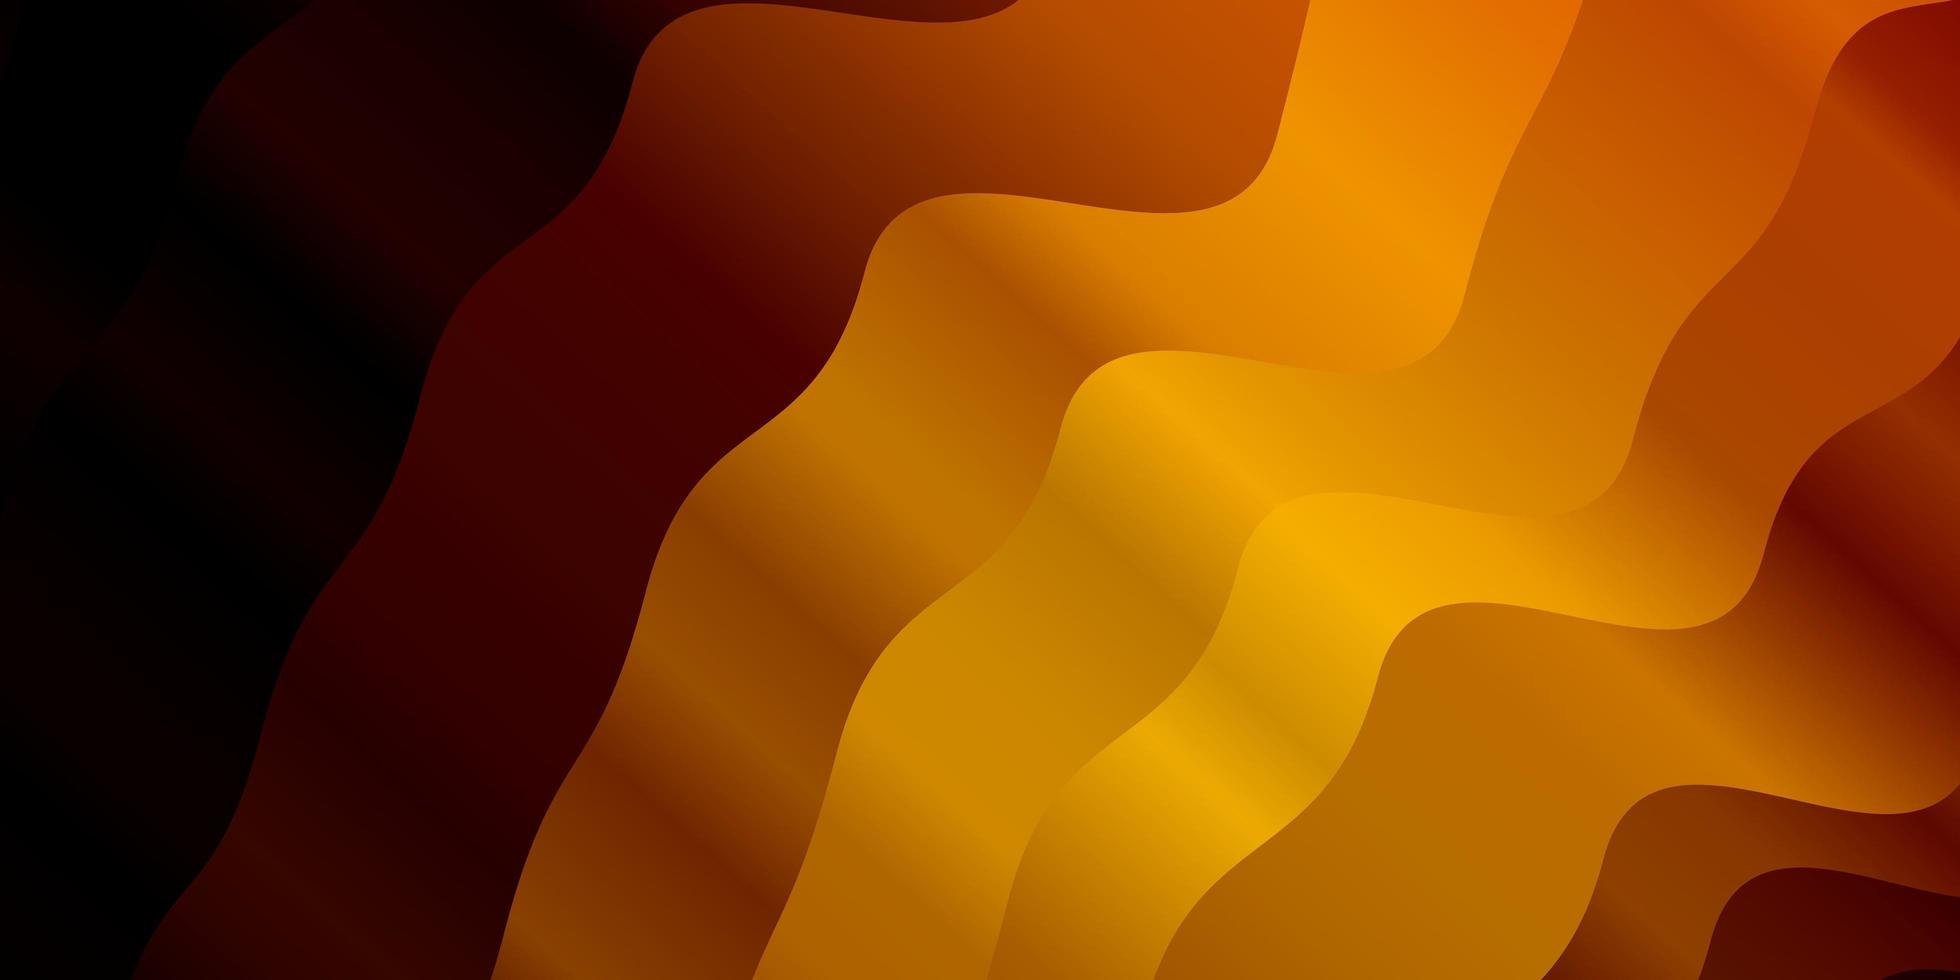 Dark Orange vector texture with wry lines.